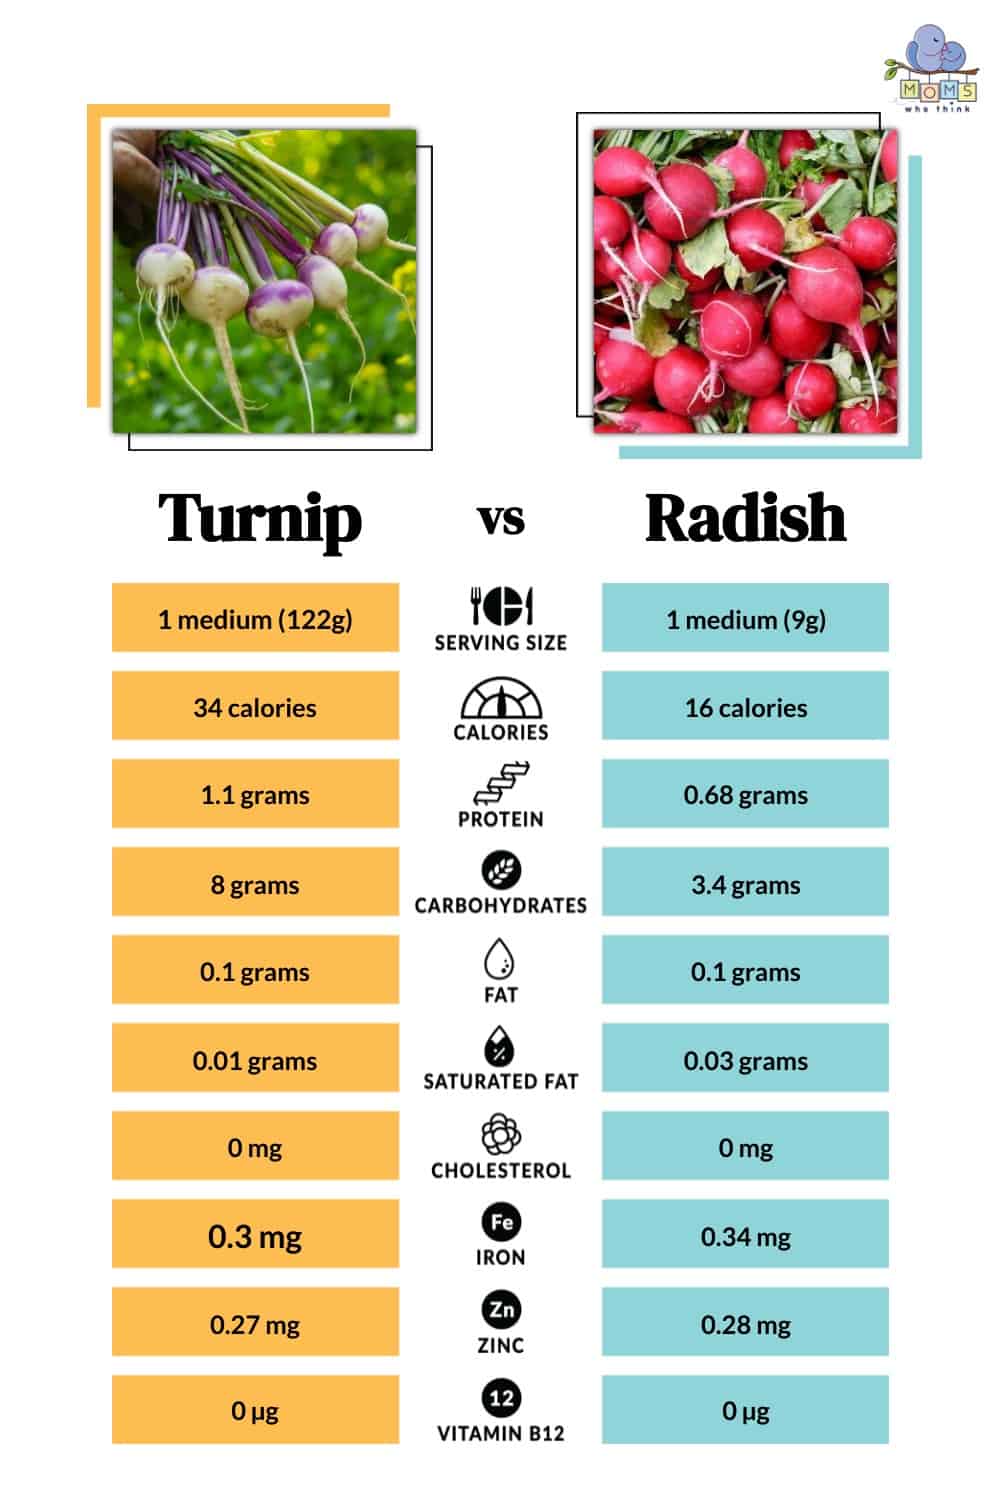 Turnip vs Radish Nutritional Facts